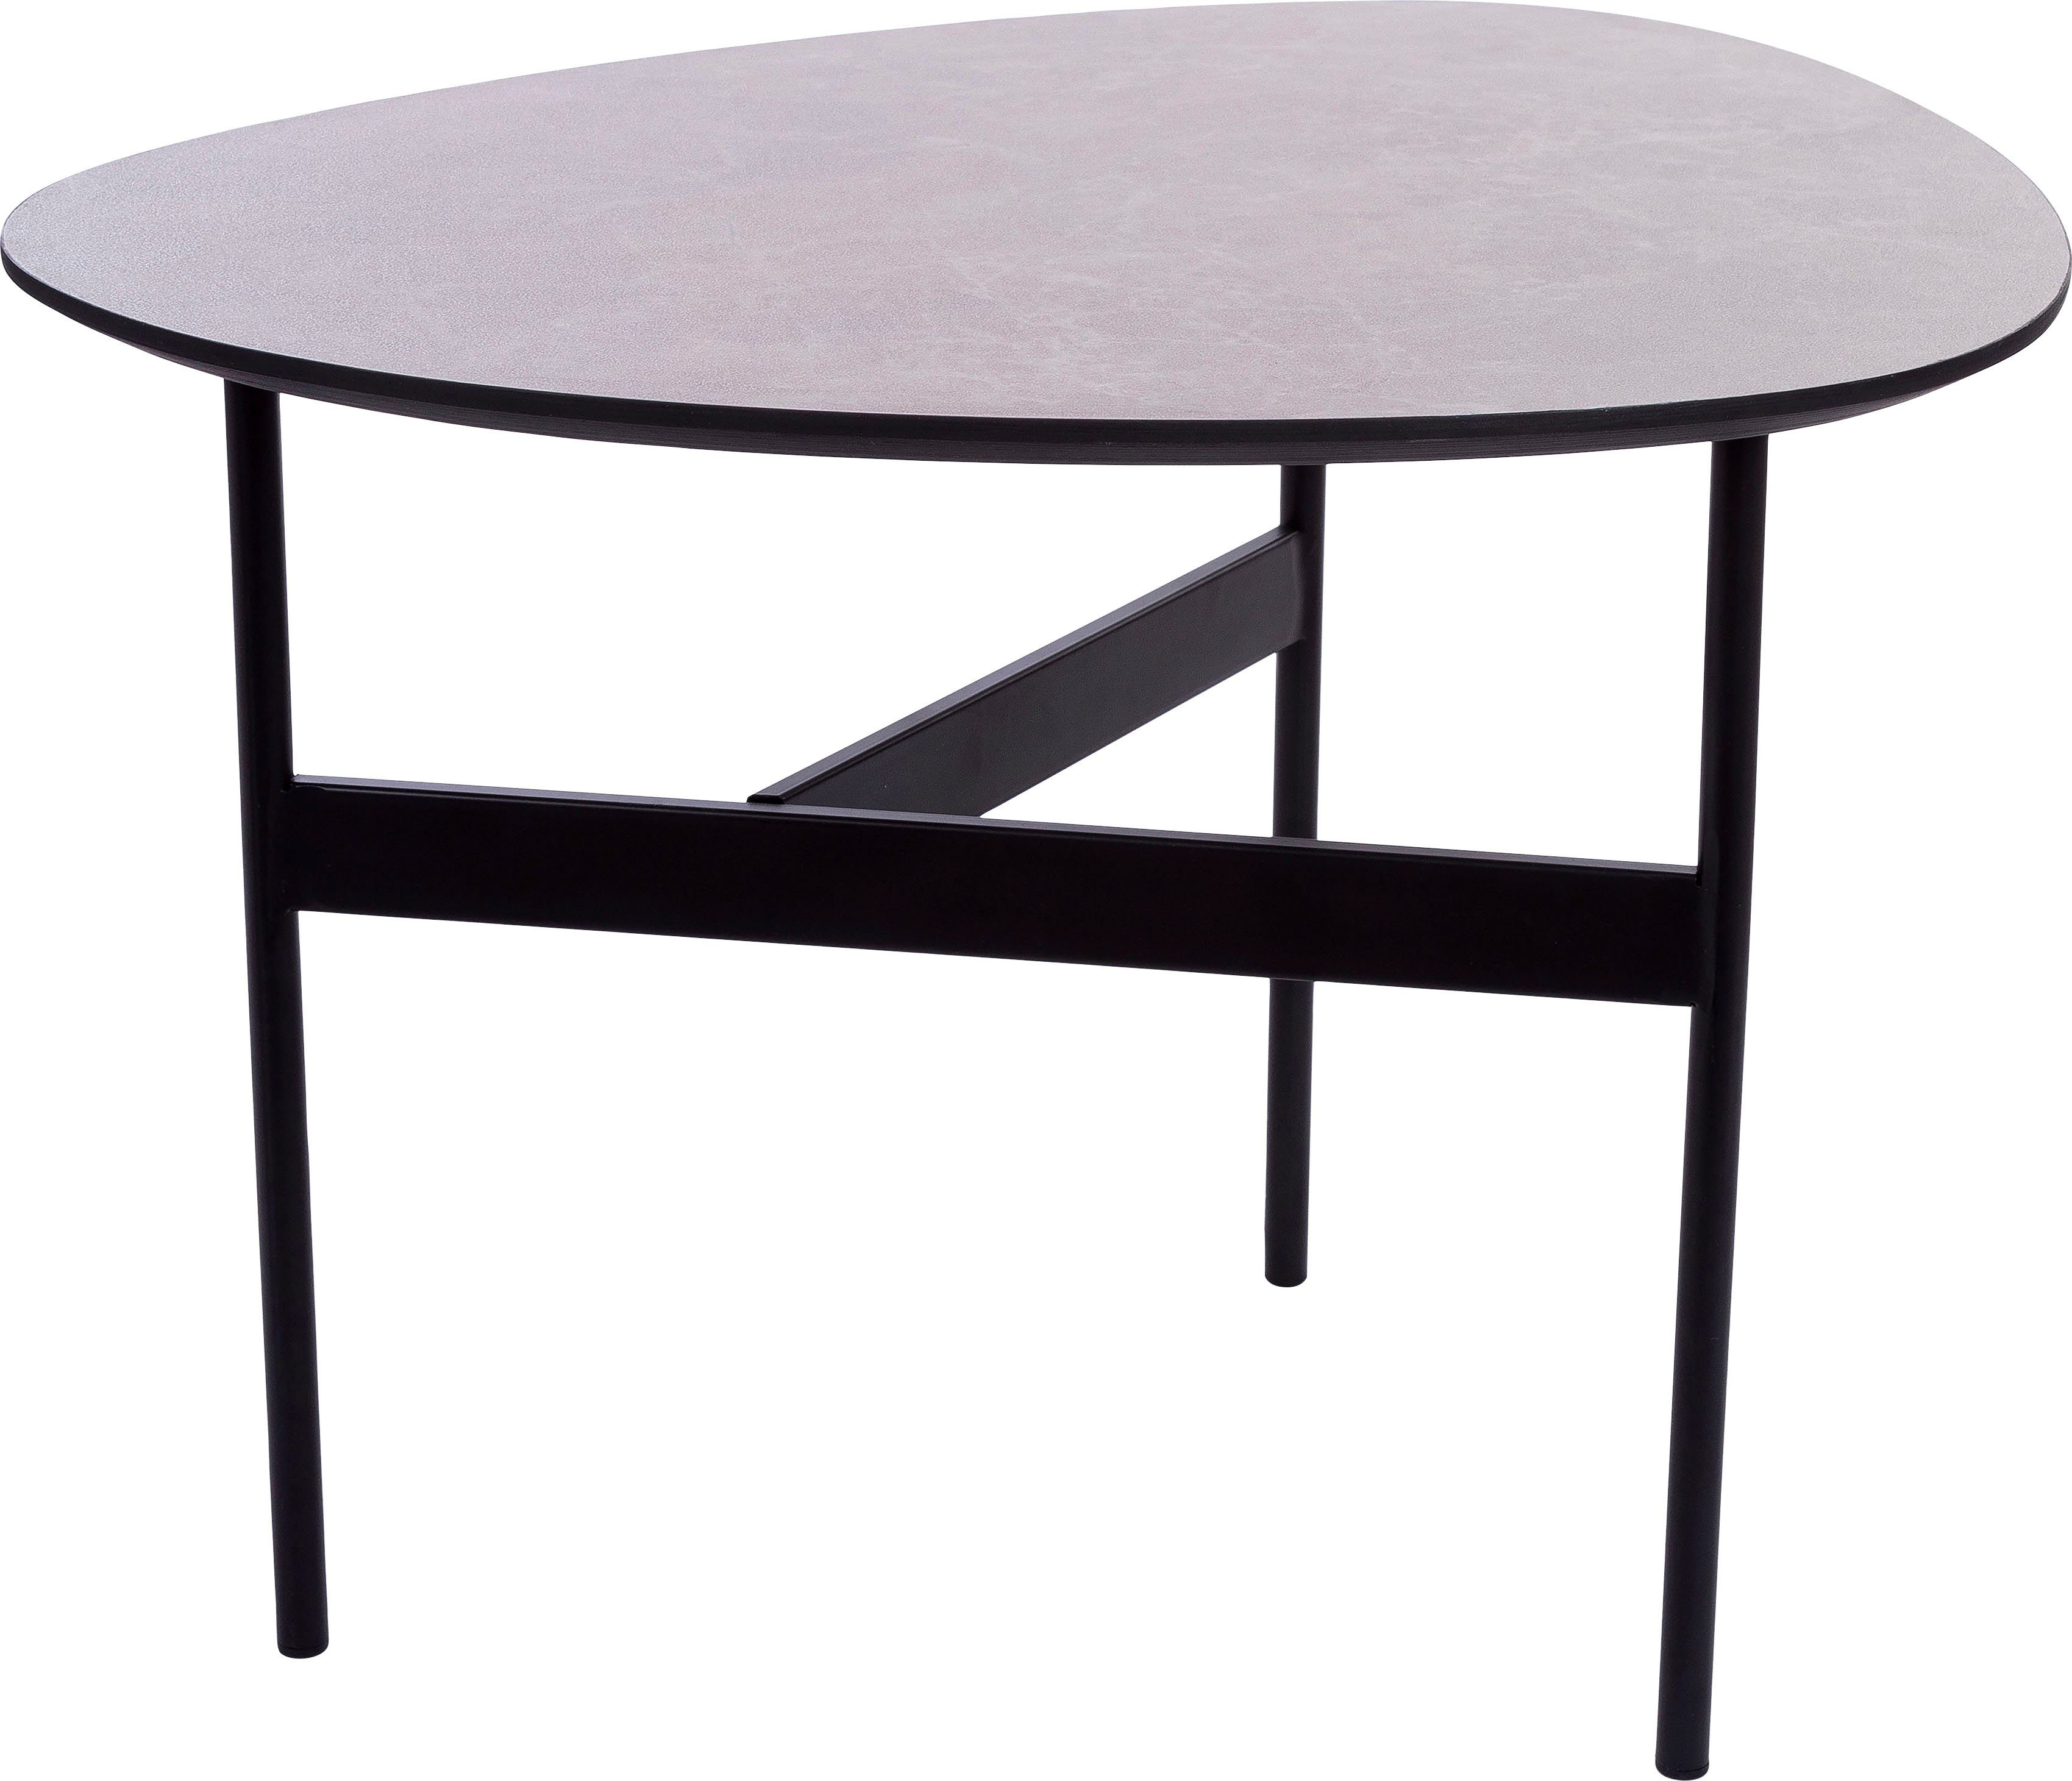 Beistelltisch, Beistelltisch grau Oval, Tischplatte, Bein lackierter Home affaire 3 Gestell